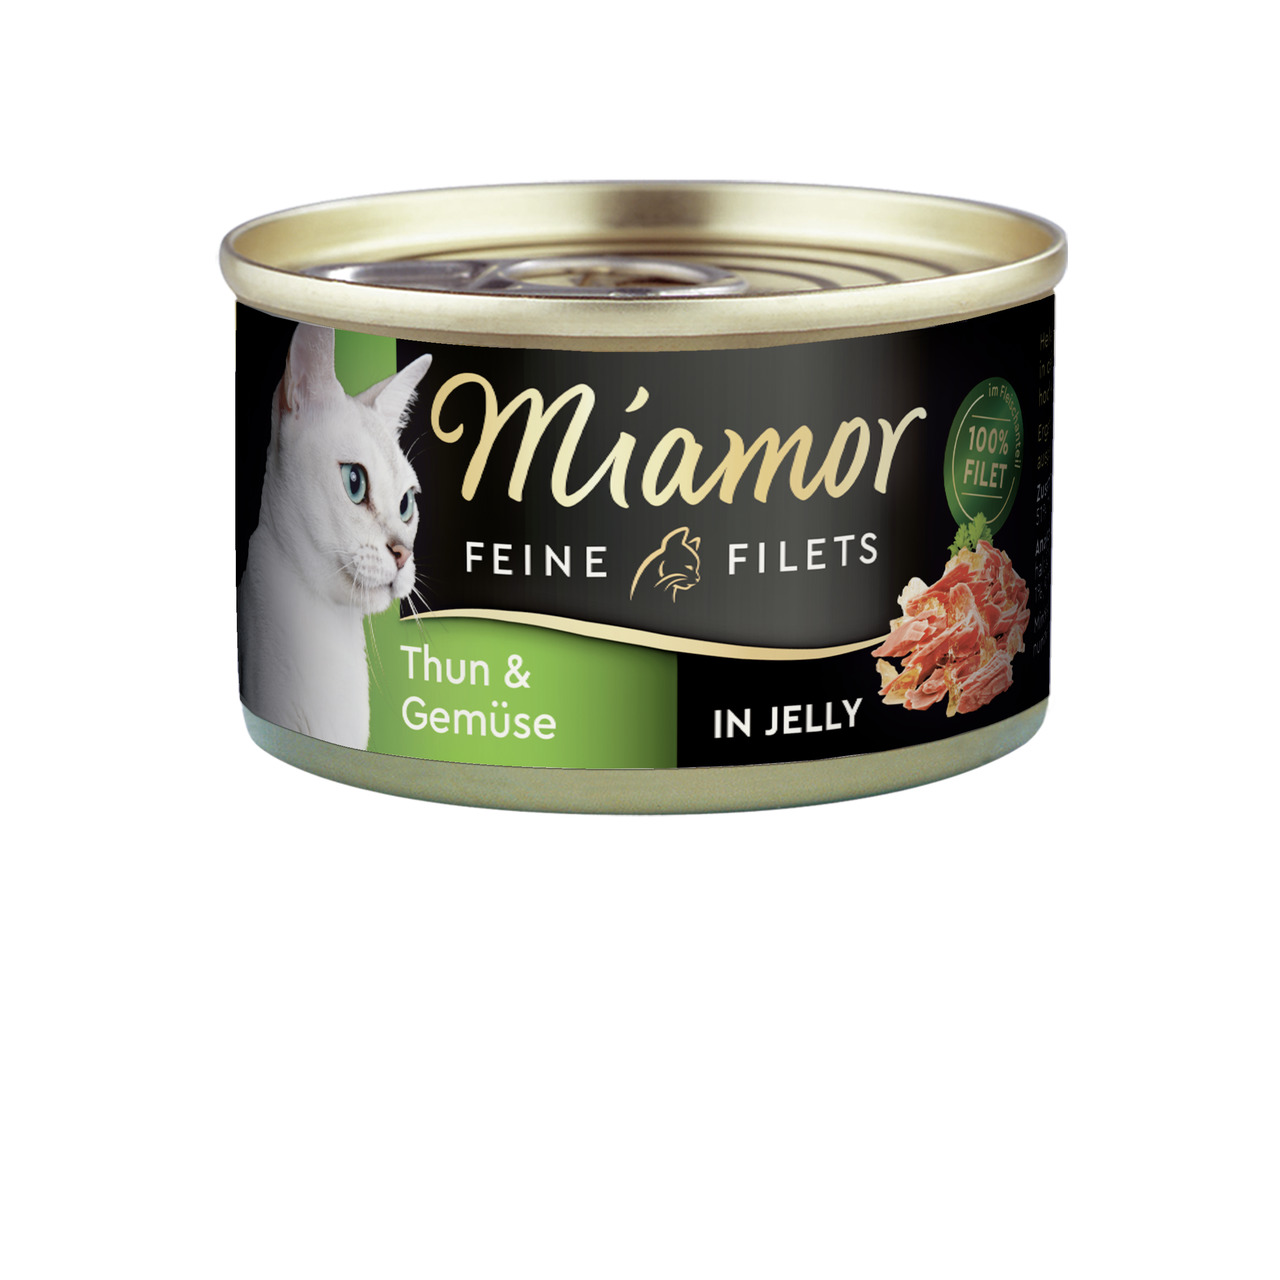 Miamor Feine Filets Thun & Gemüse in Jelly Katzen Nassfutter 100 g